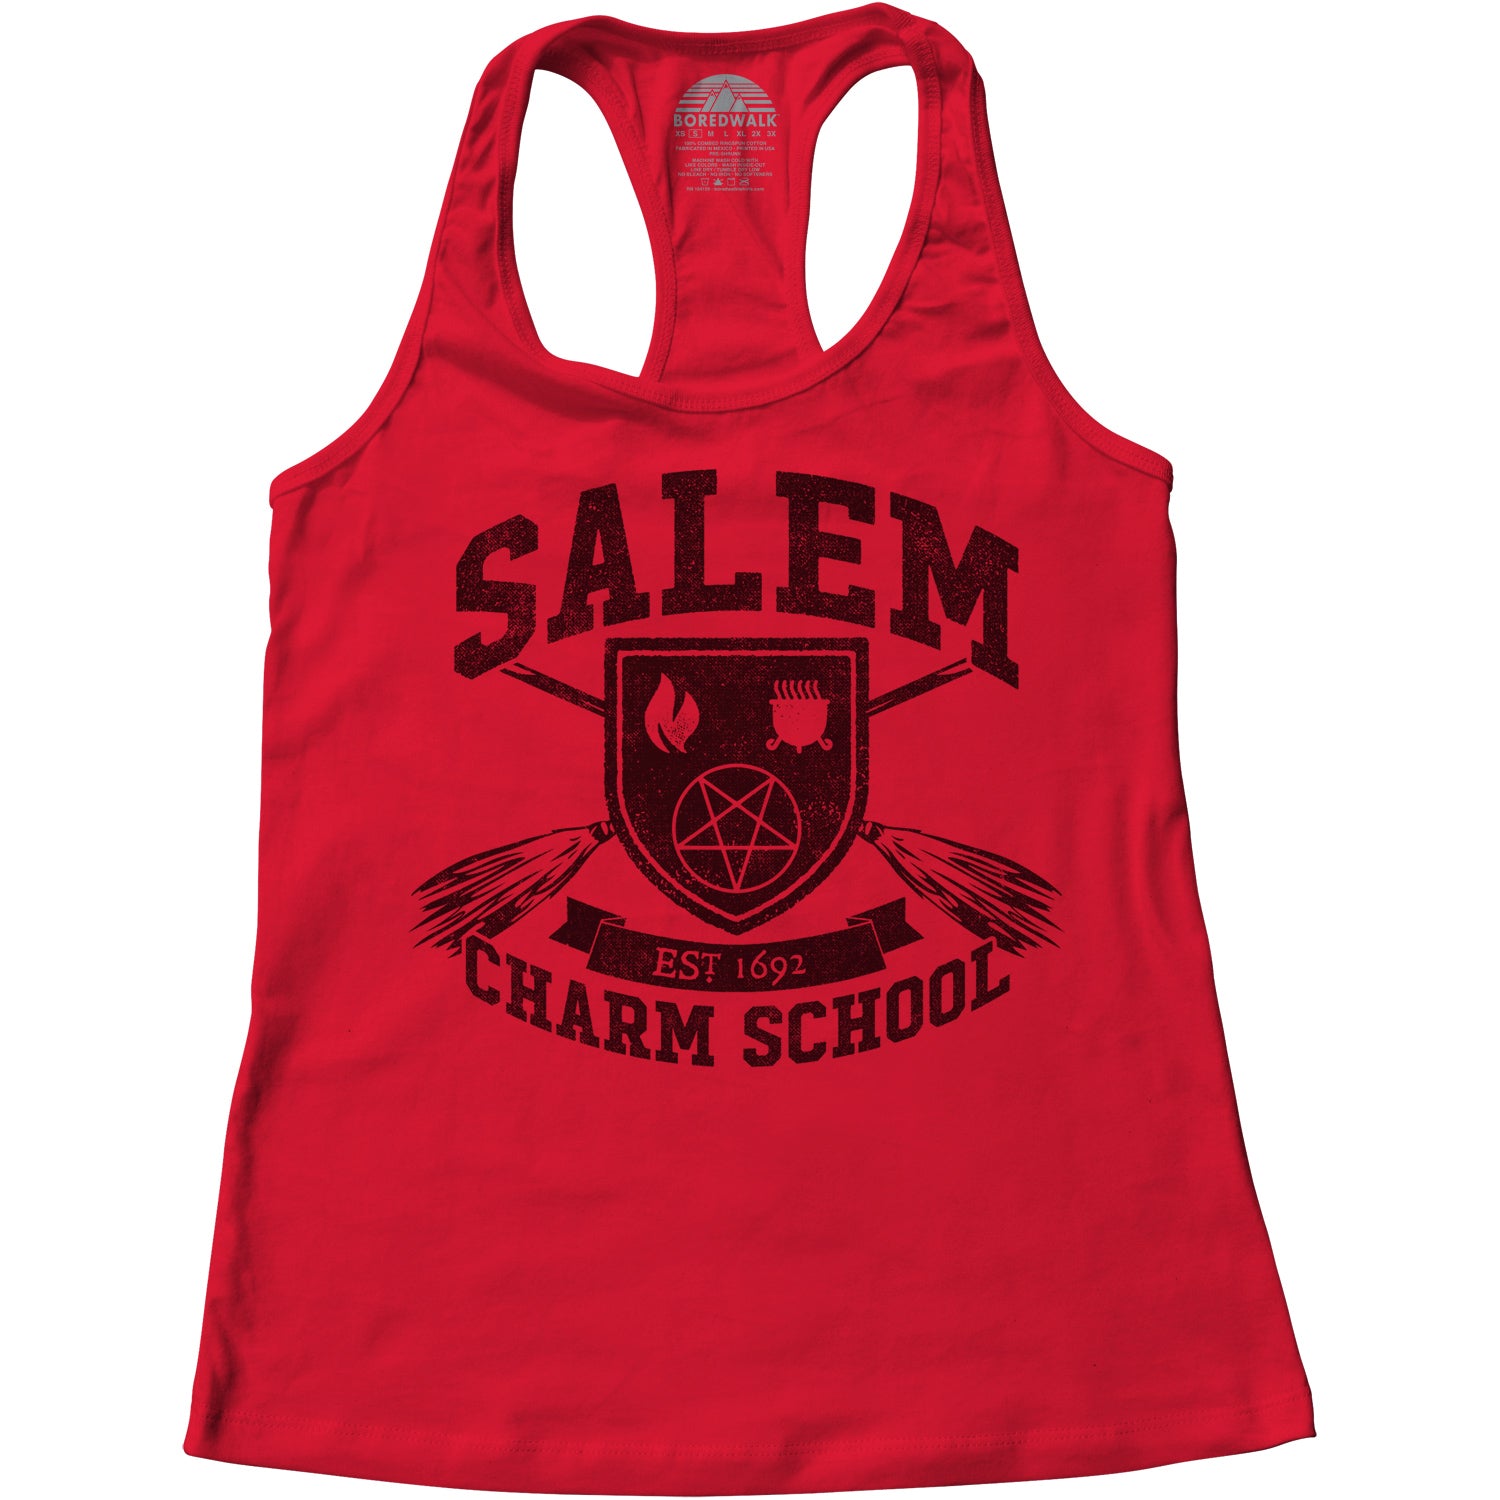 Women's Salem Charm School Racerback Tank Top